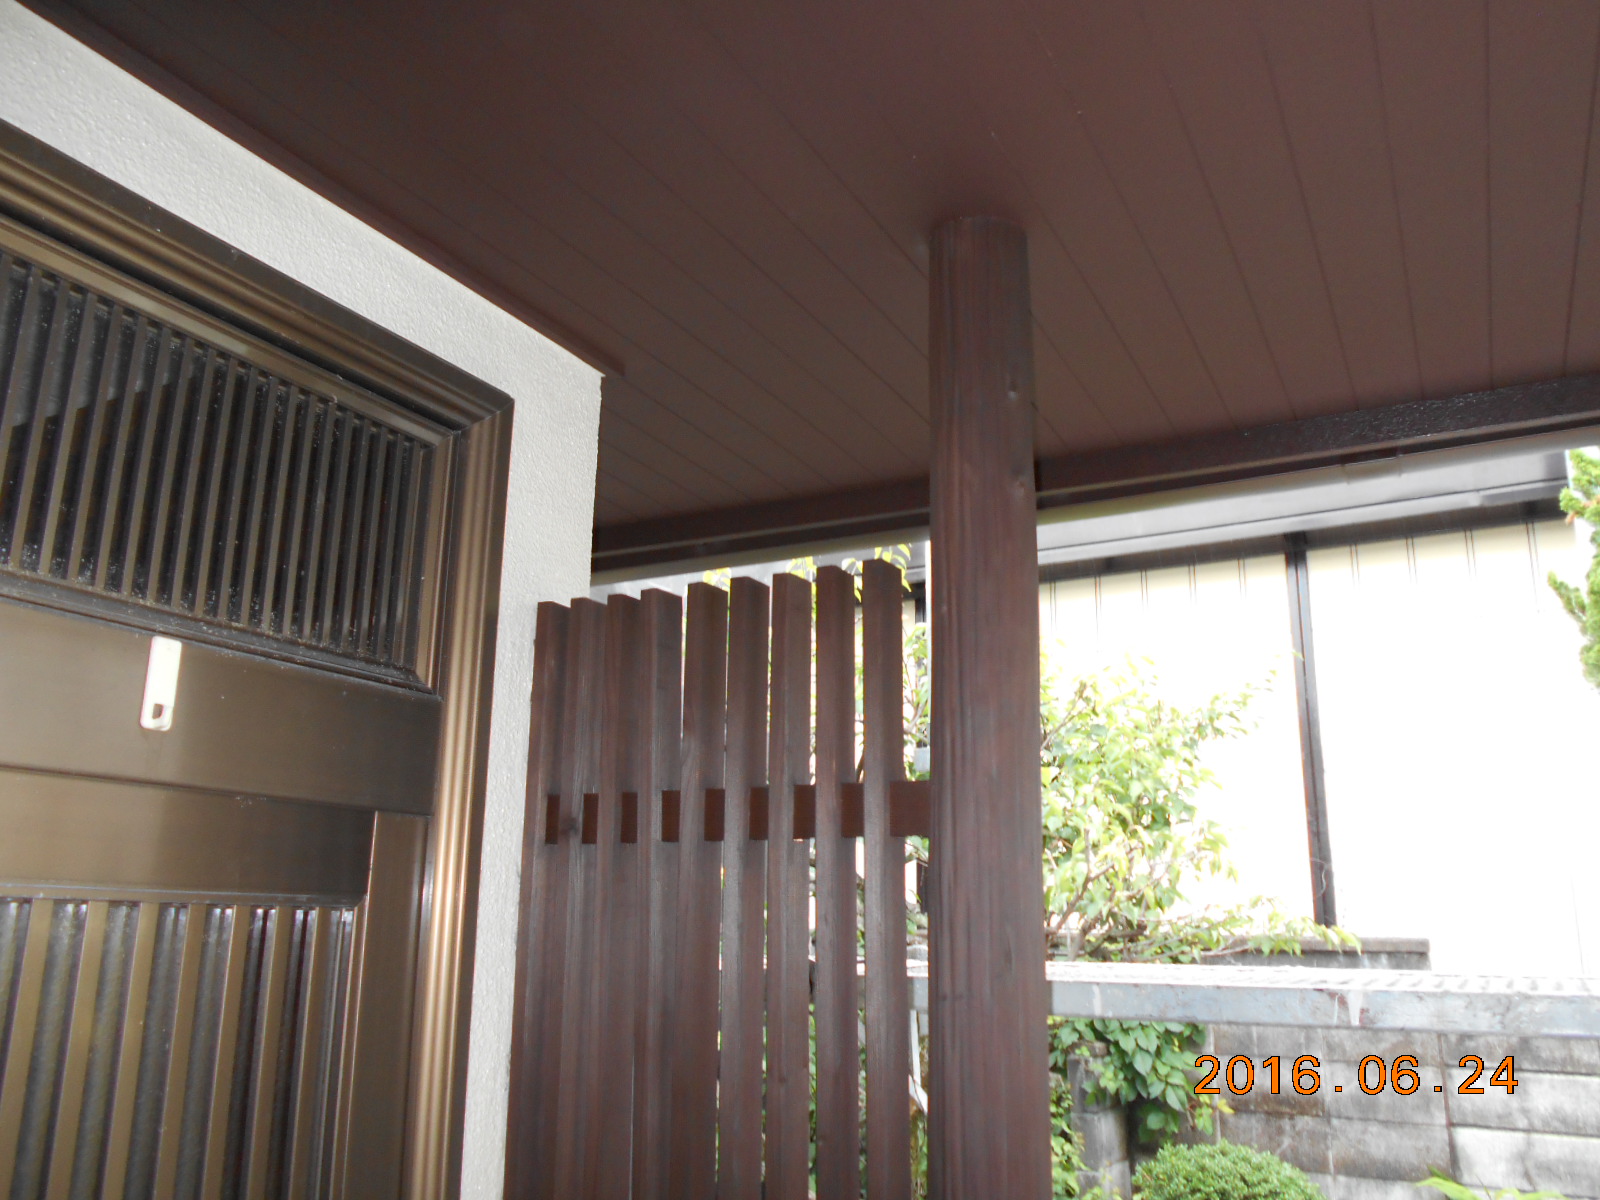 京都市南区にある有限会社三共建設では増改築･リフォームをメインにしております。外壁塗装や雨漏りなどの屋根修理、水回り修理、エクステリア工事、バリアフリー工事、新築も承っておりますので、お気軽にお問い合わせください